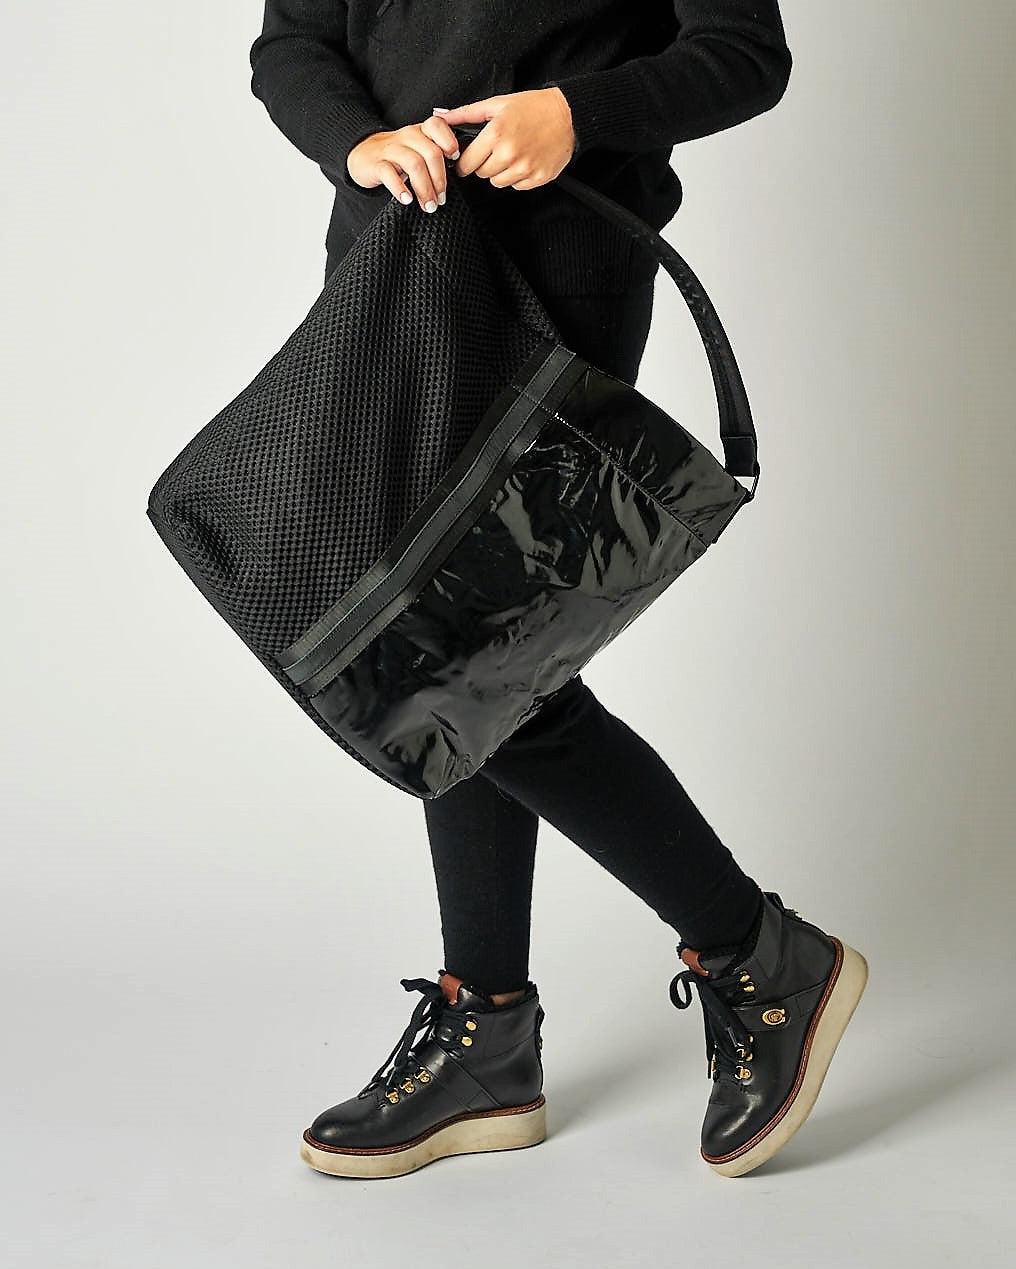 Anya leather bag